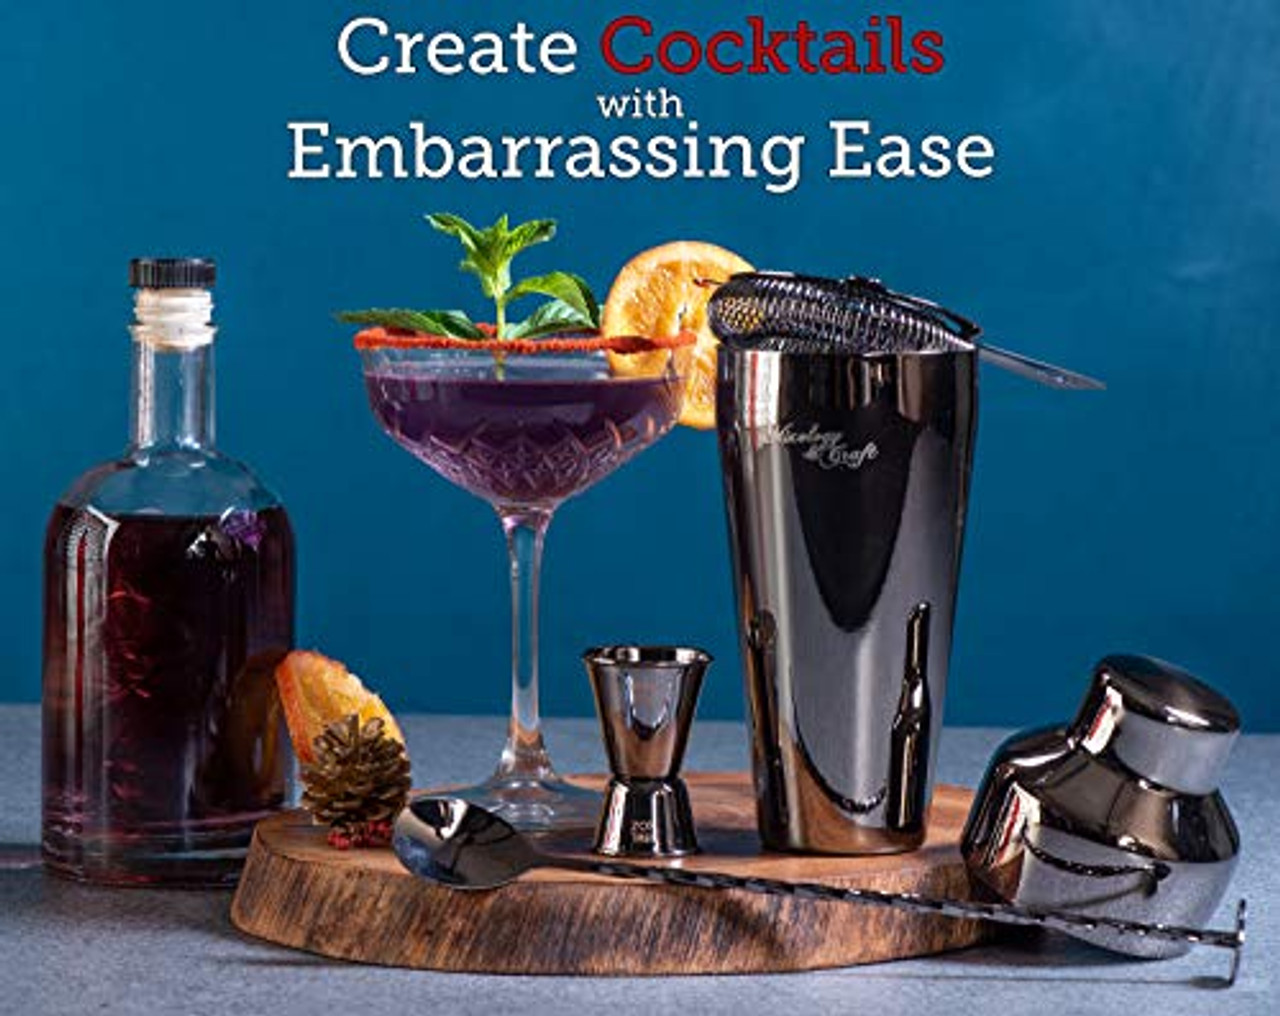 Kit Cocktail - Pour amateurs ou professionnels